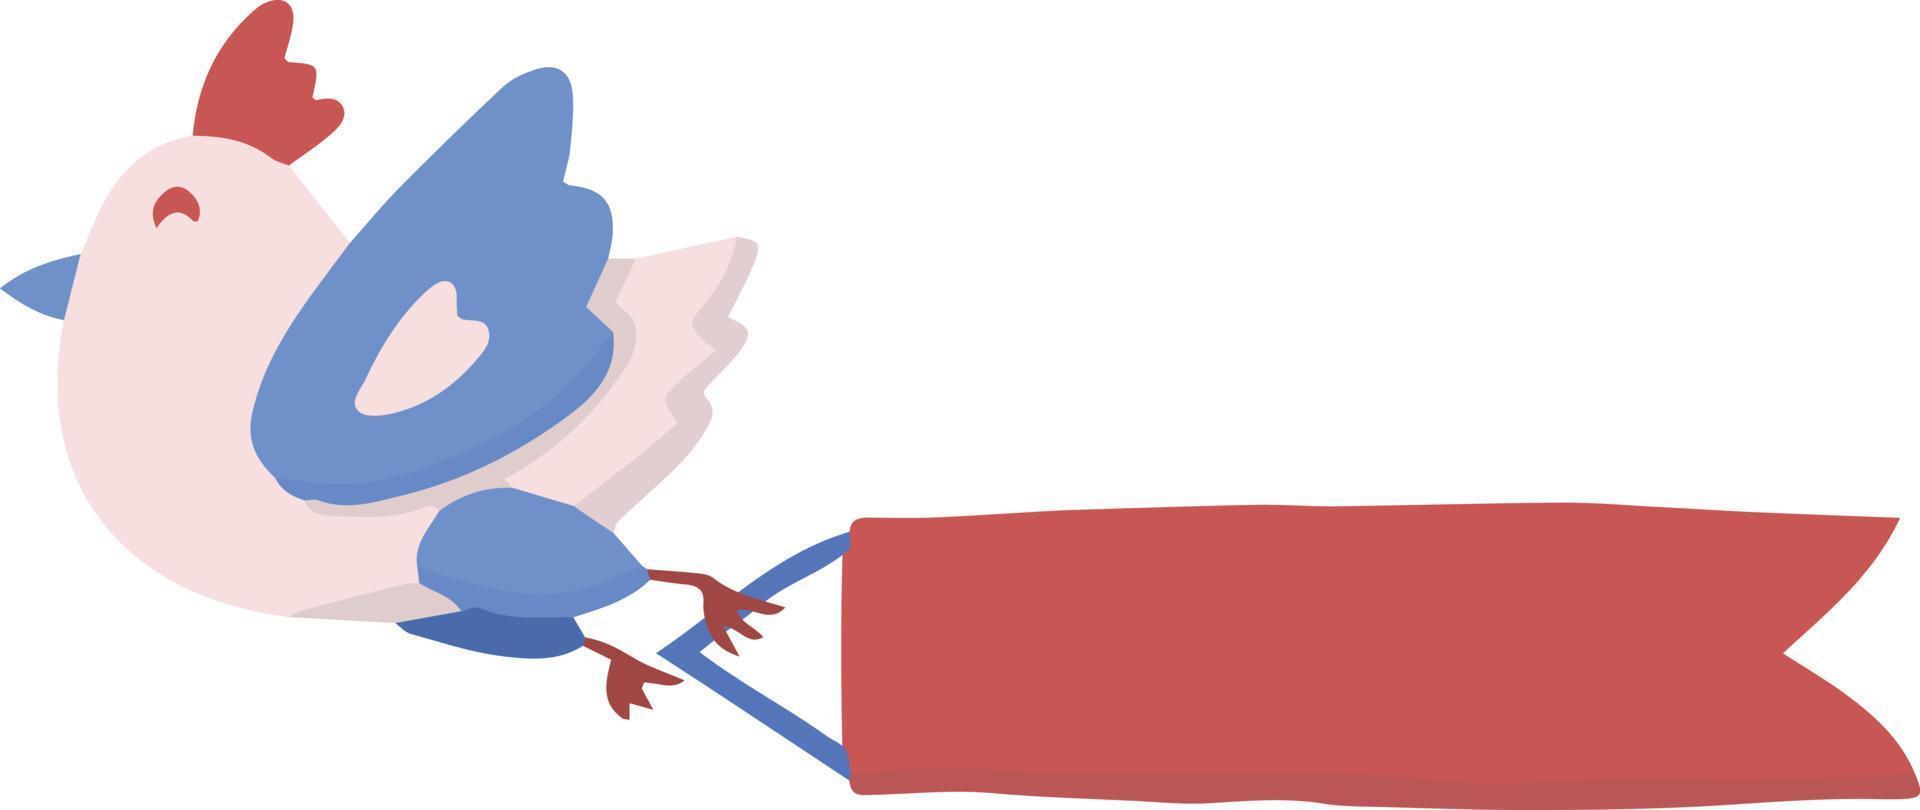 Hand Drawn valentine's day bird illustration vector